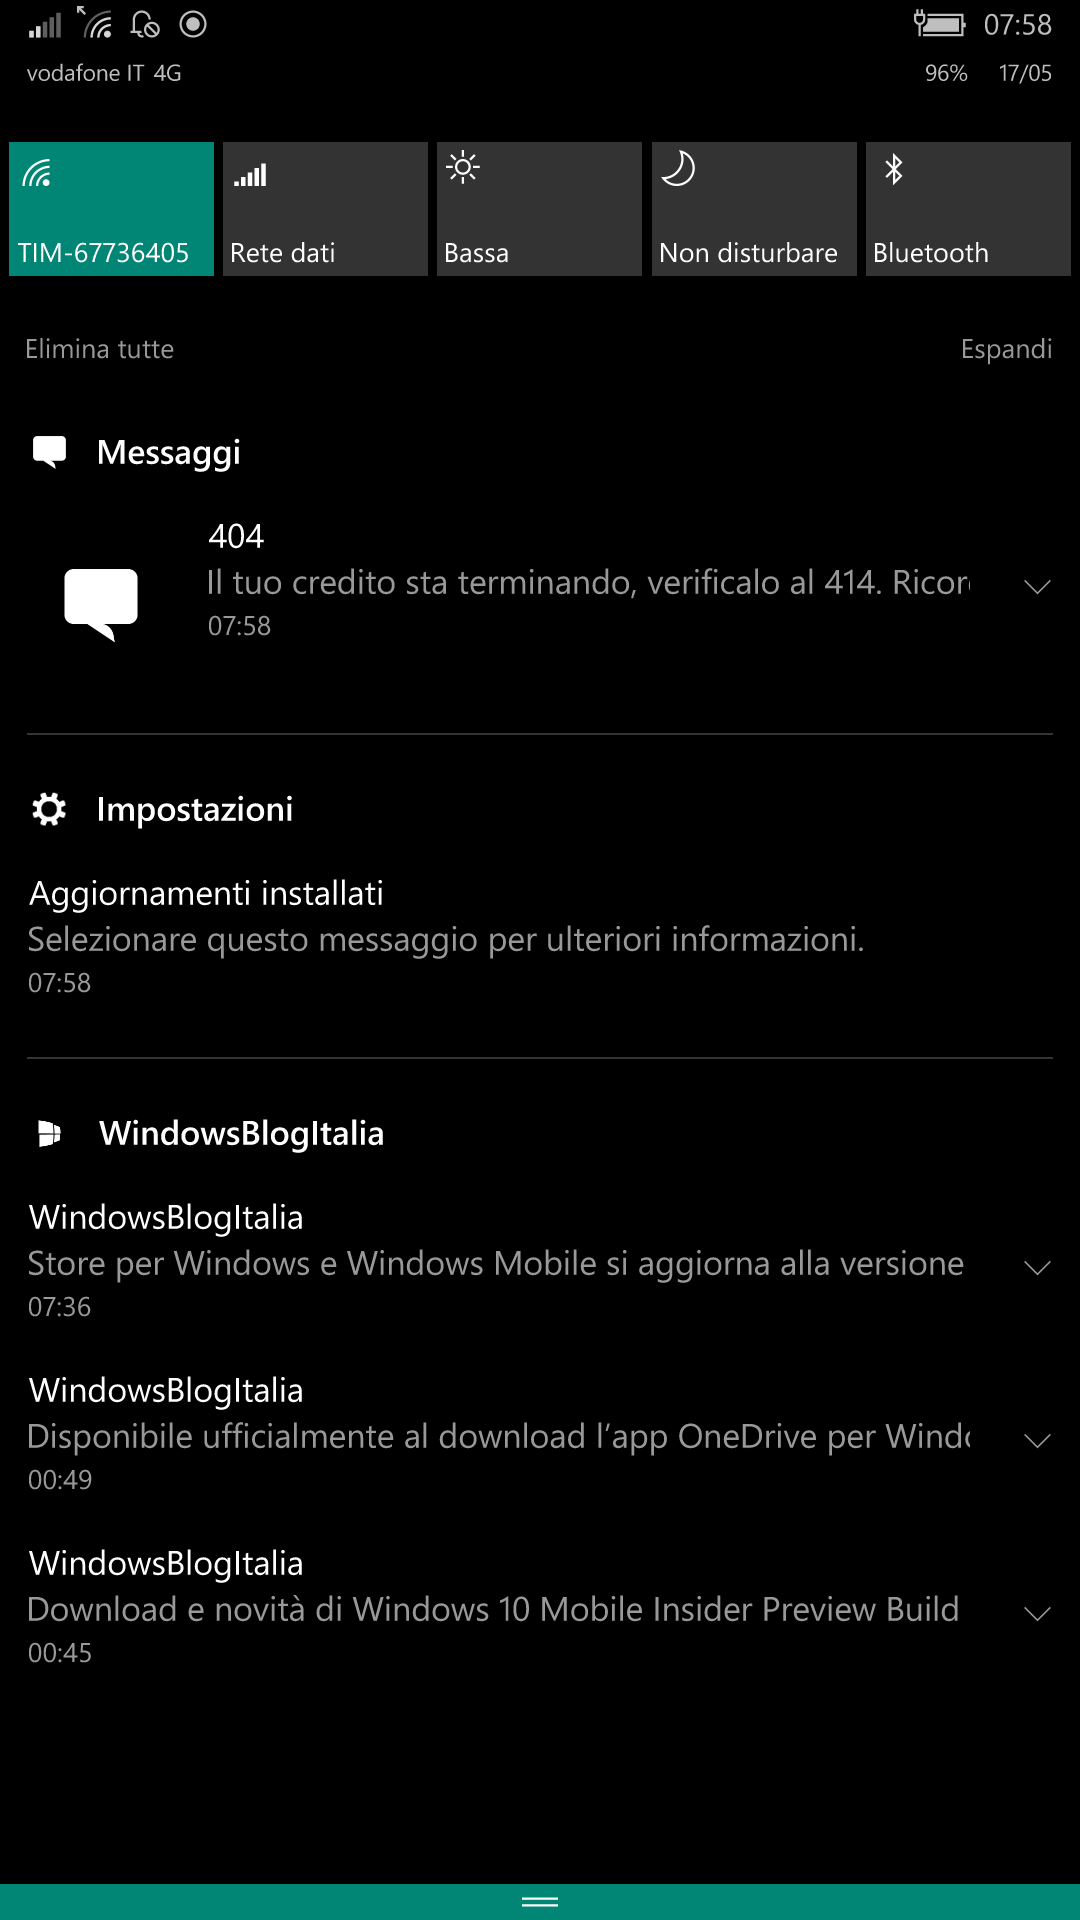 Centro notifiche - windows 10 mobile 14342